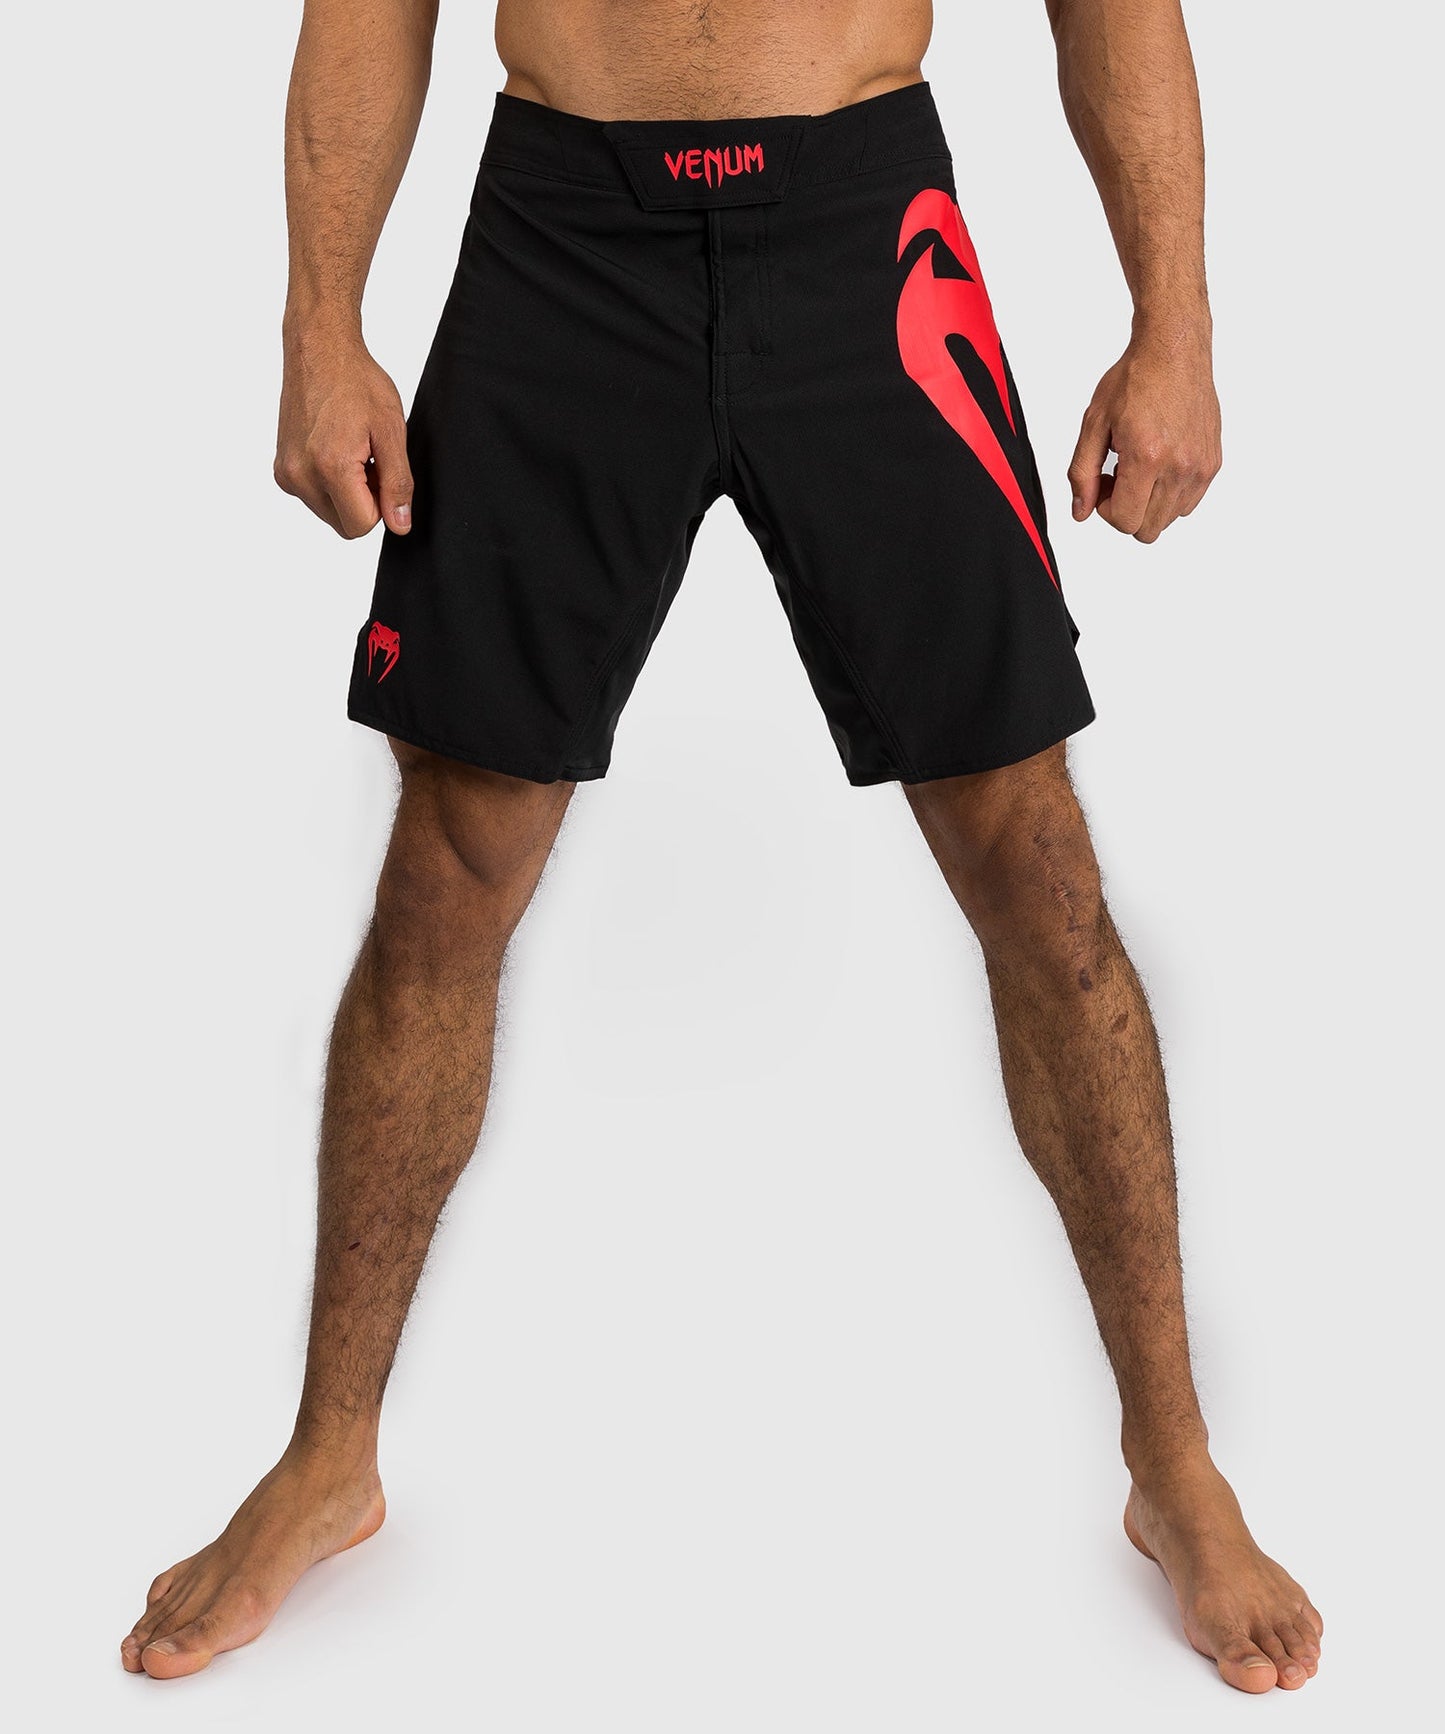 Shorts de combat Venum Light 5.0 - Noir/Rouge